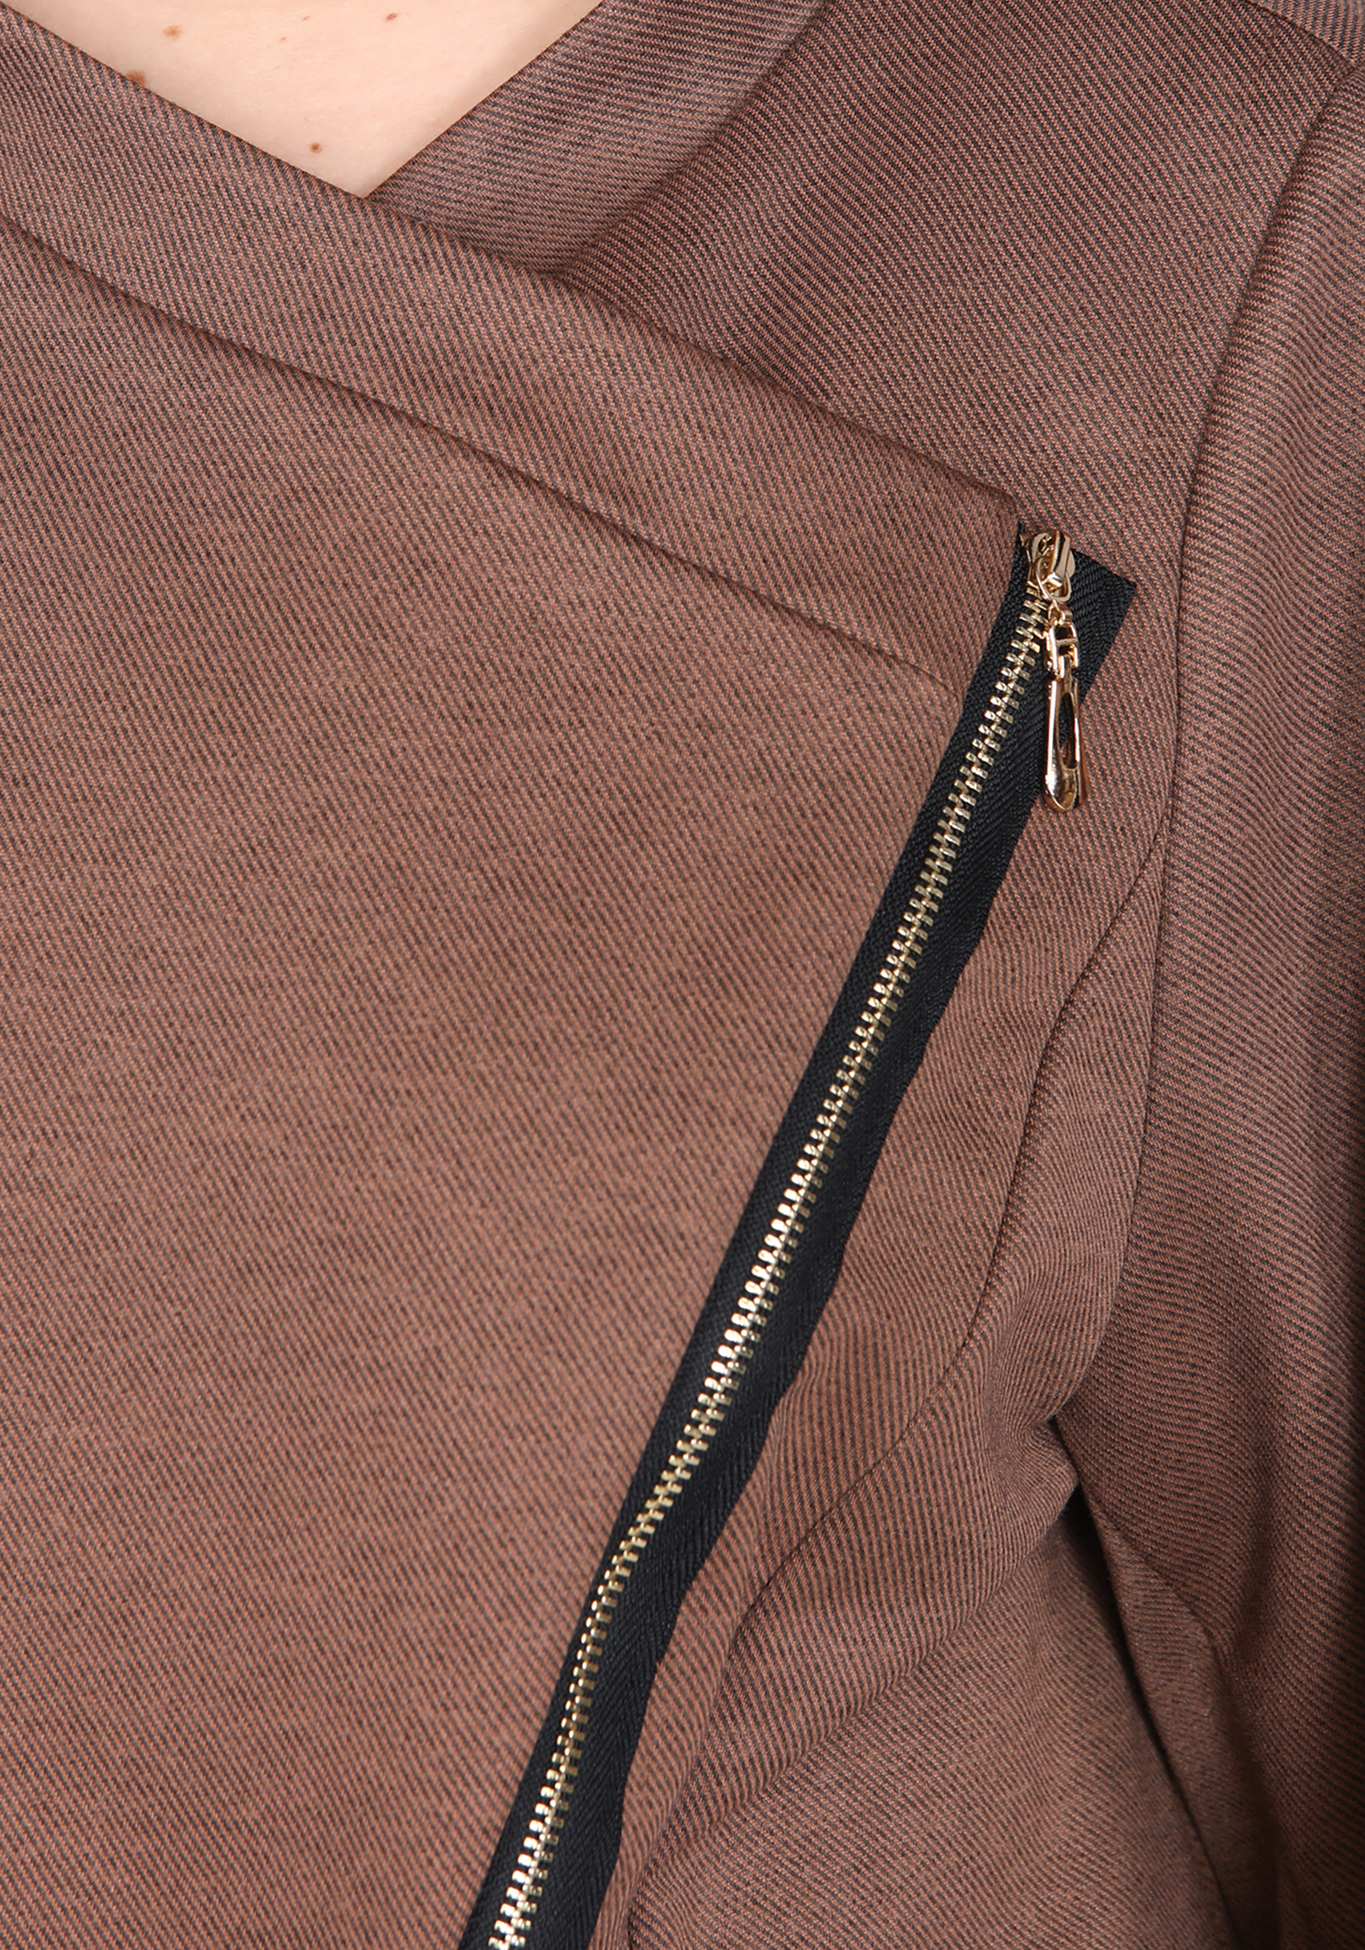 Жакет с асимметричной застежкой-молнией GalaGrosso, размер 50, цвет коричневый - фото 4